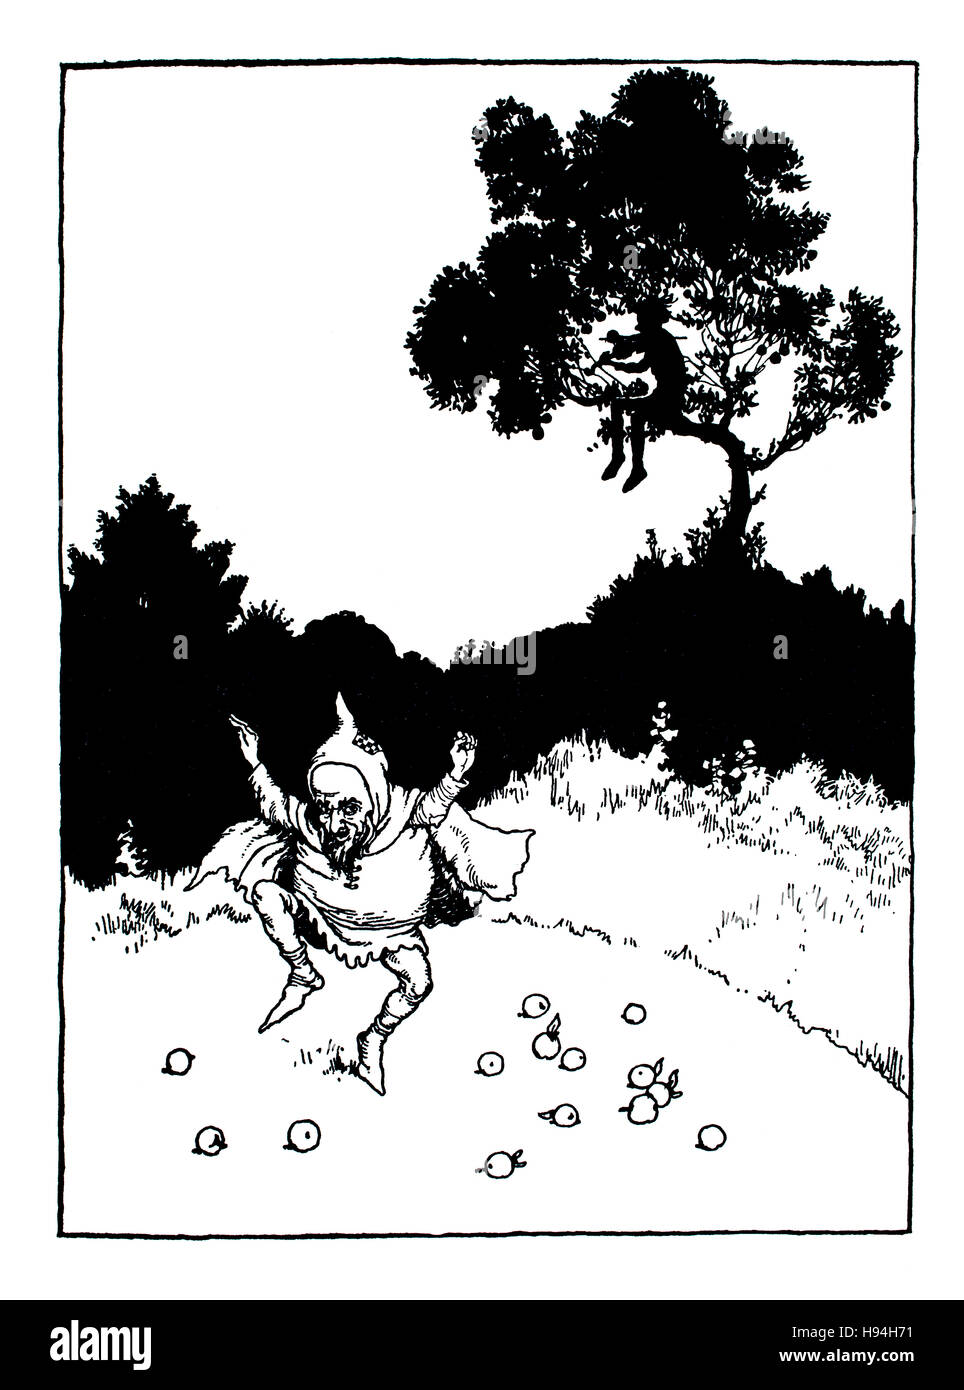 Hondiddledo fing an, leise auf seiner Geige, Kinder Buchillustration von William Heath Robinson von 1934 Buch der Goblins spielen Stockfoto